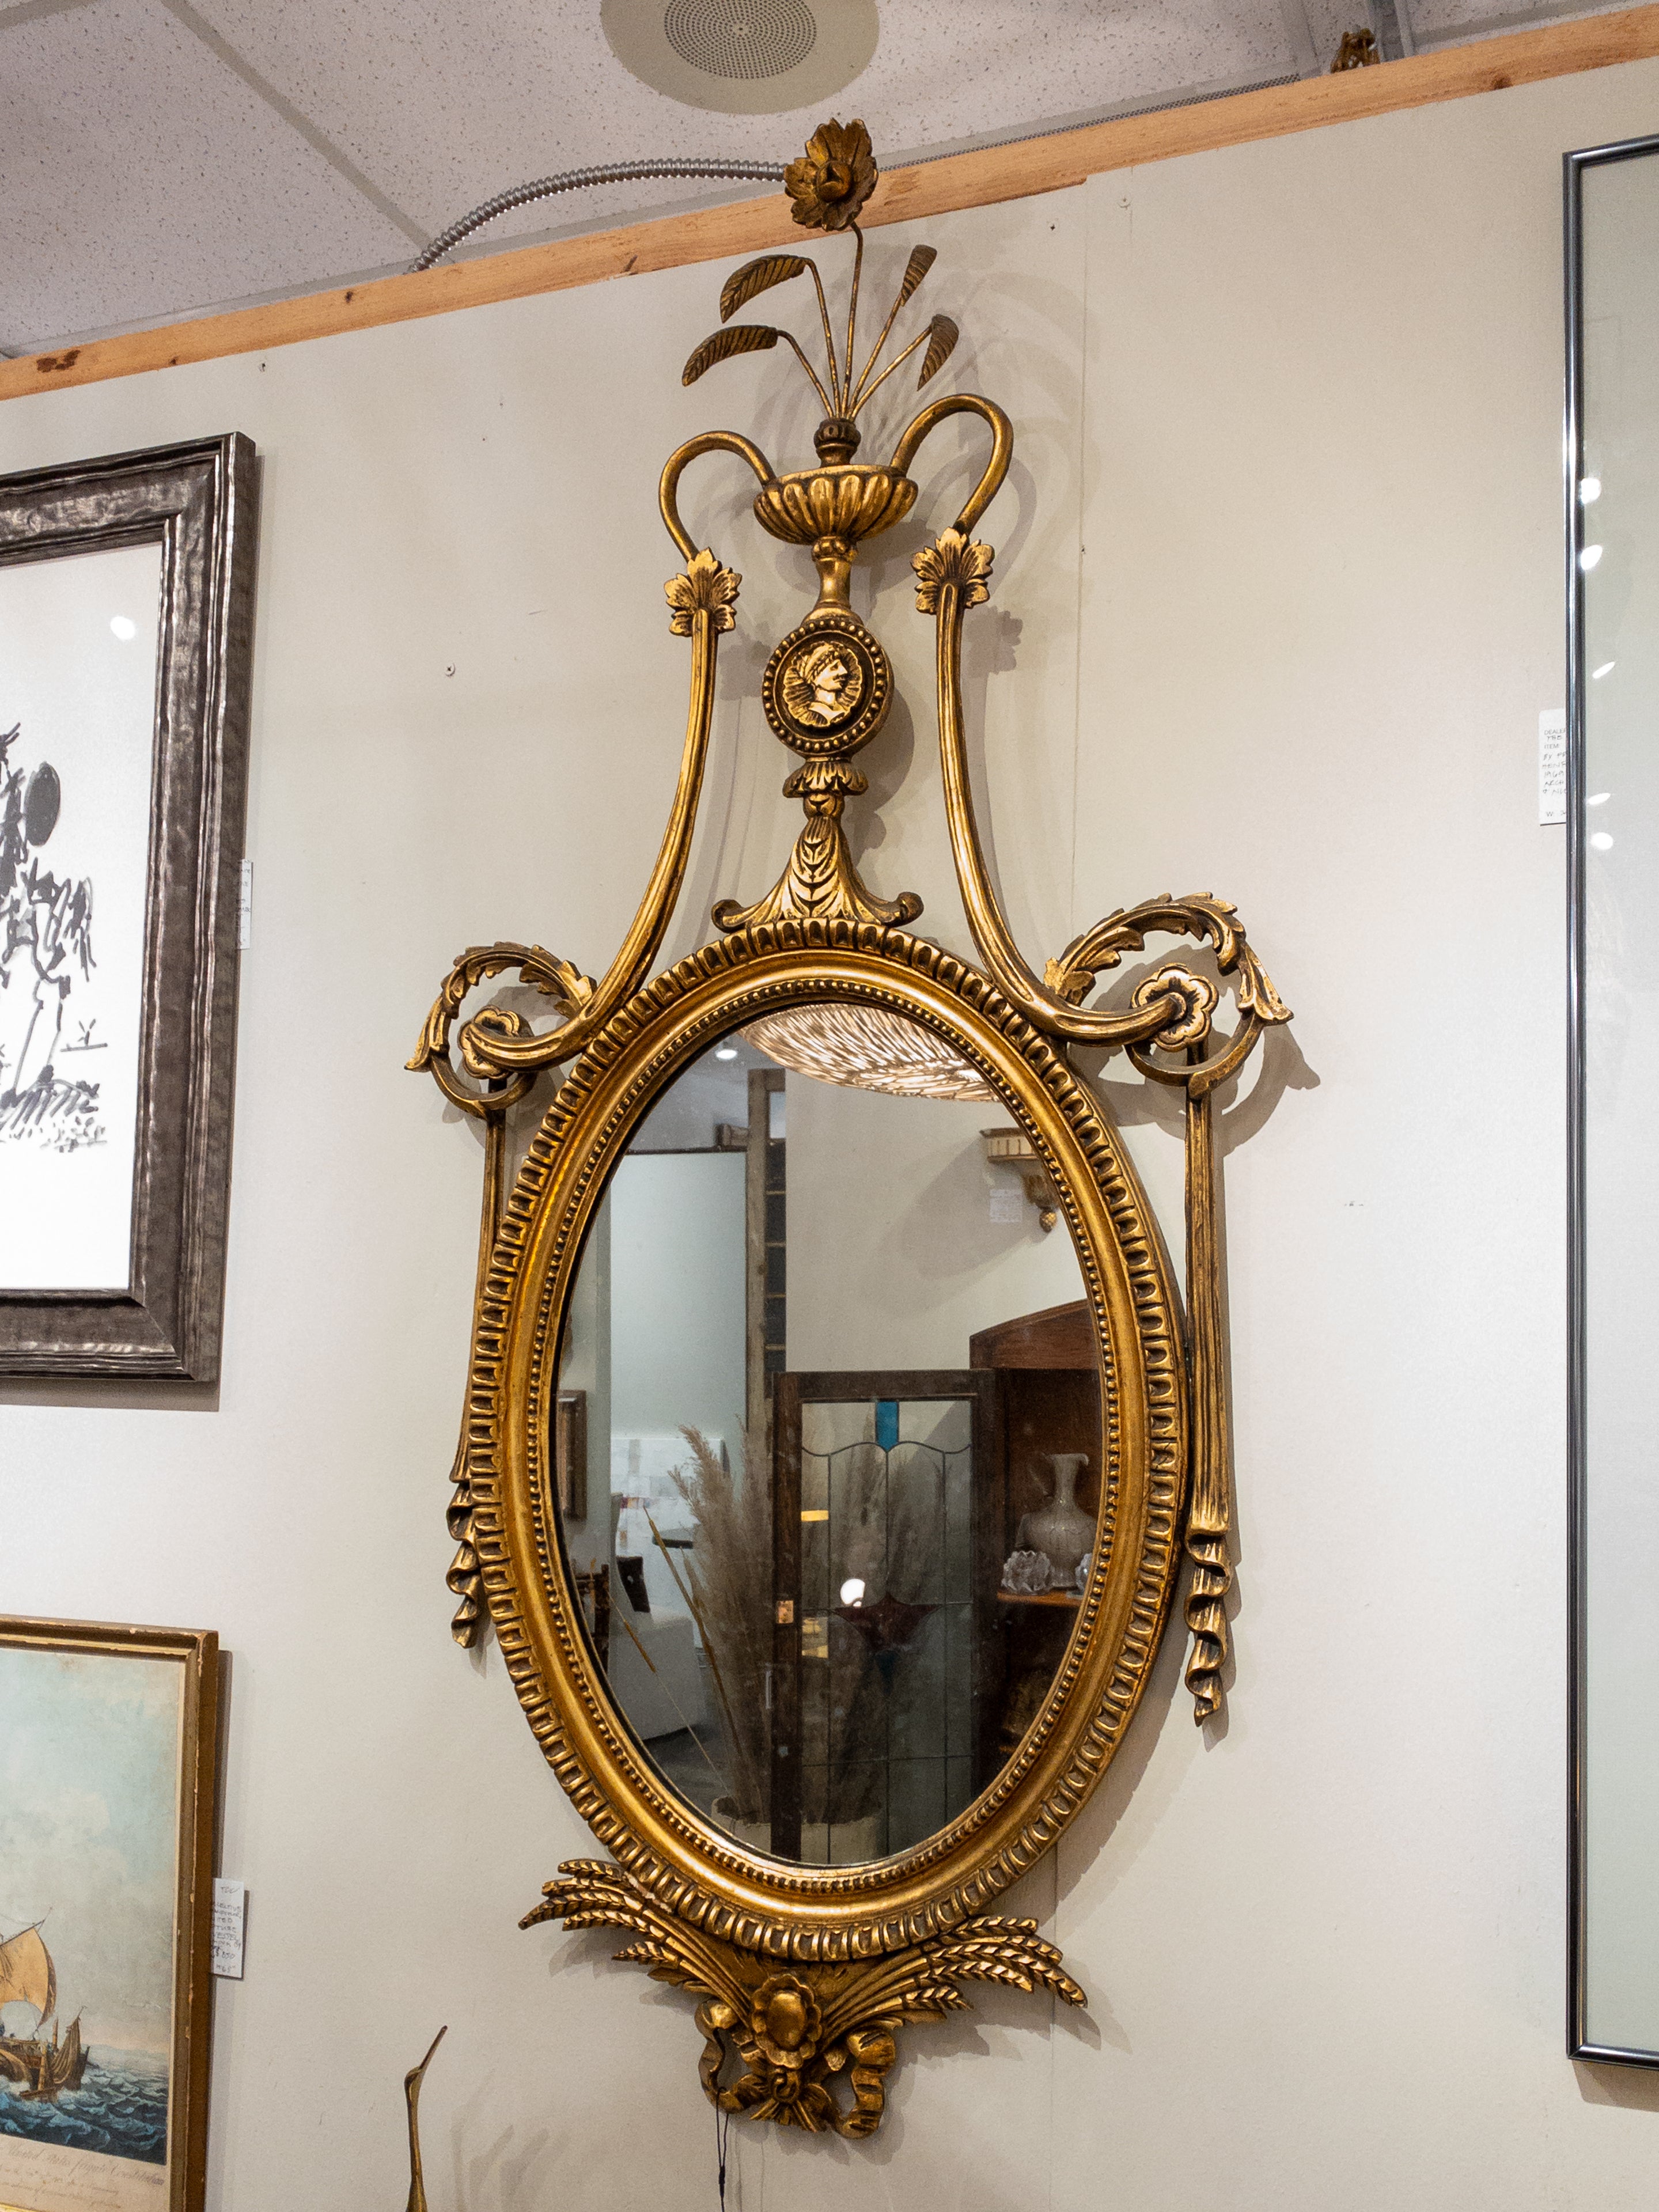 Le miroir français en bois doré du XIXe siècle est un exemple exquis d'artisanat ancien, incarnant l'opulence et le souci du détail caractéristiques du design français du XIXe siècle. Ce miroir ornemental est orné de détails complexes qui le rendent